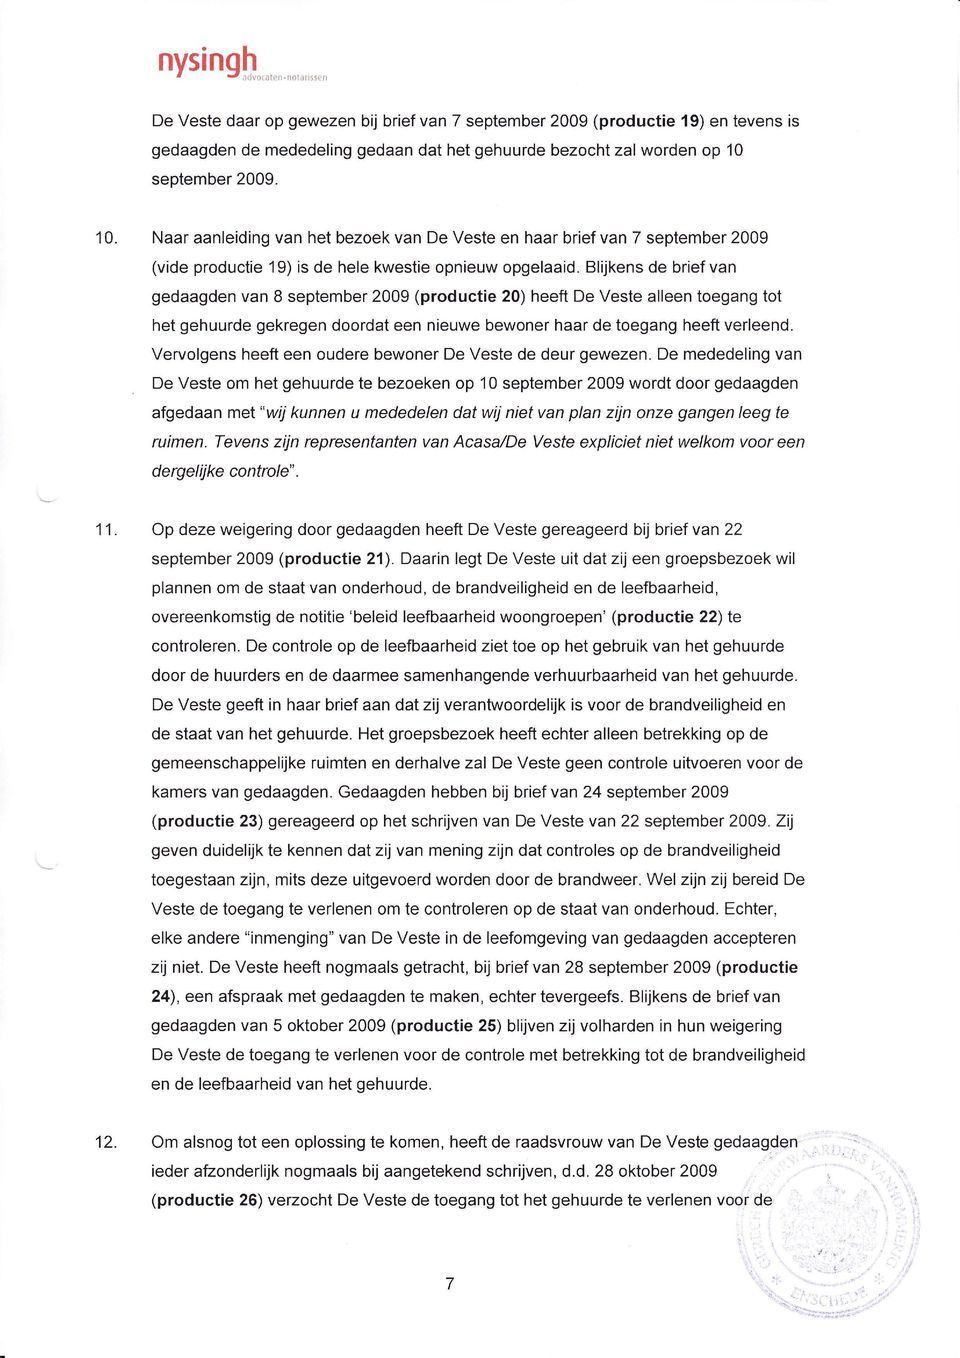 Blijkens de brief van gedaagden van 8 september 2009 (productie 20) heeft De Veste alleen toegang tot het gehuurde gekregen doordat een nieuwe bewoner haar de toegang heeft verleend.